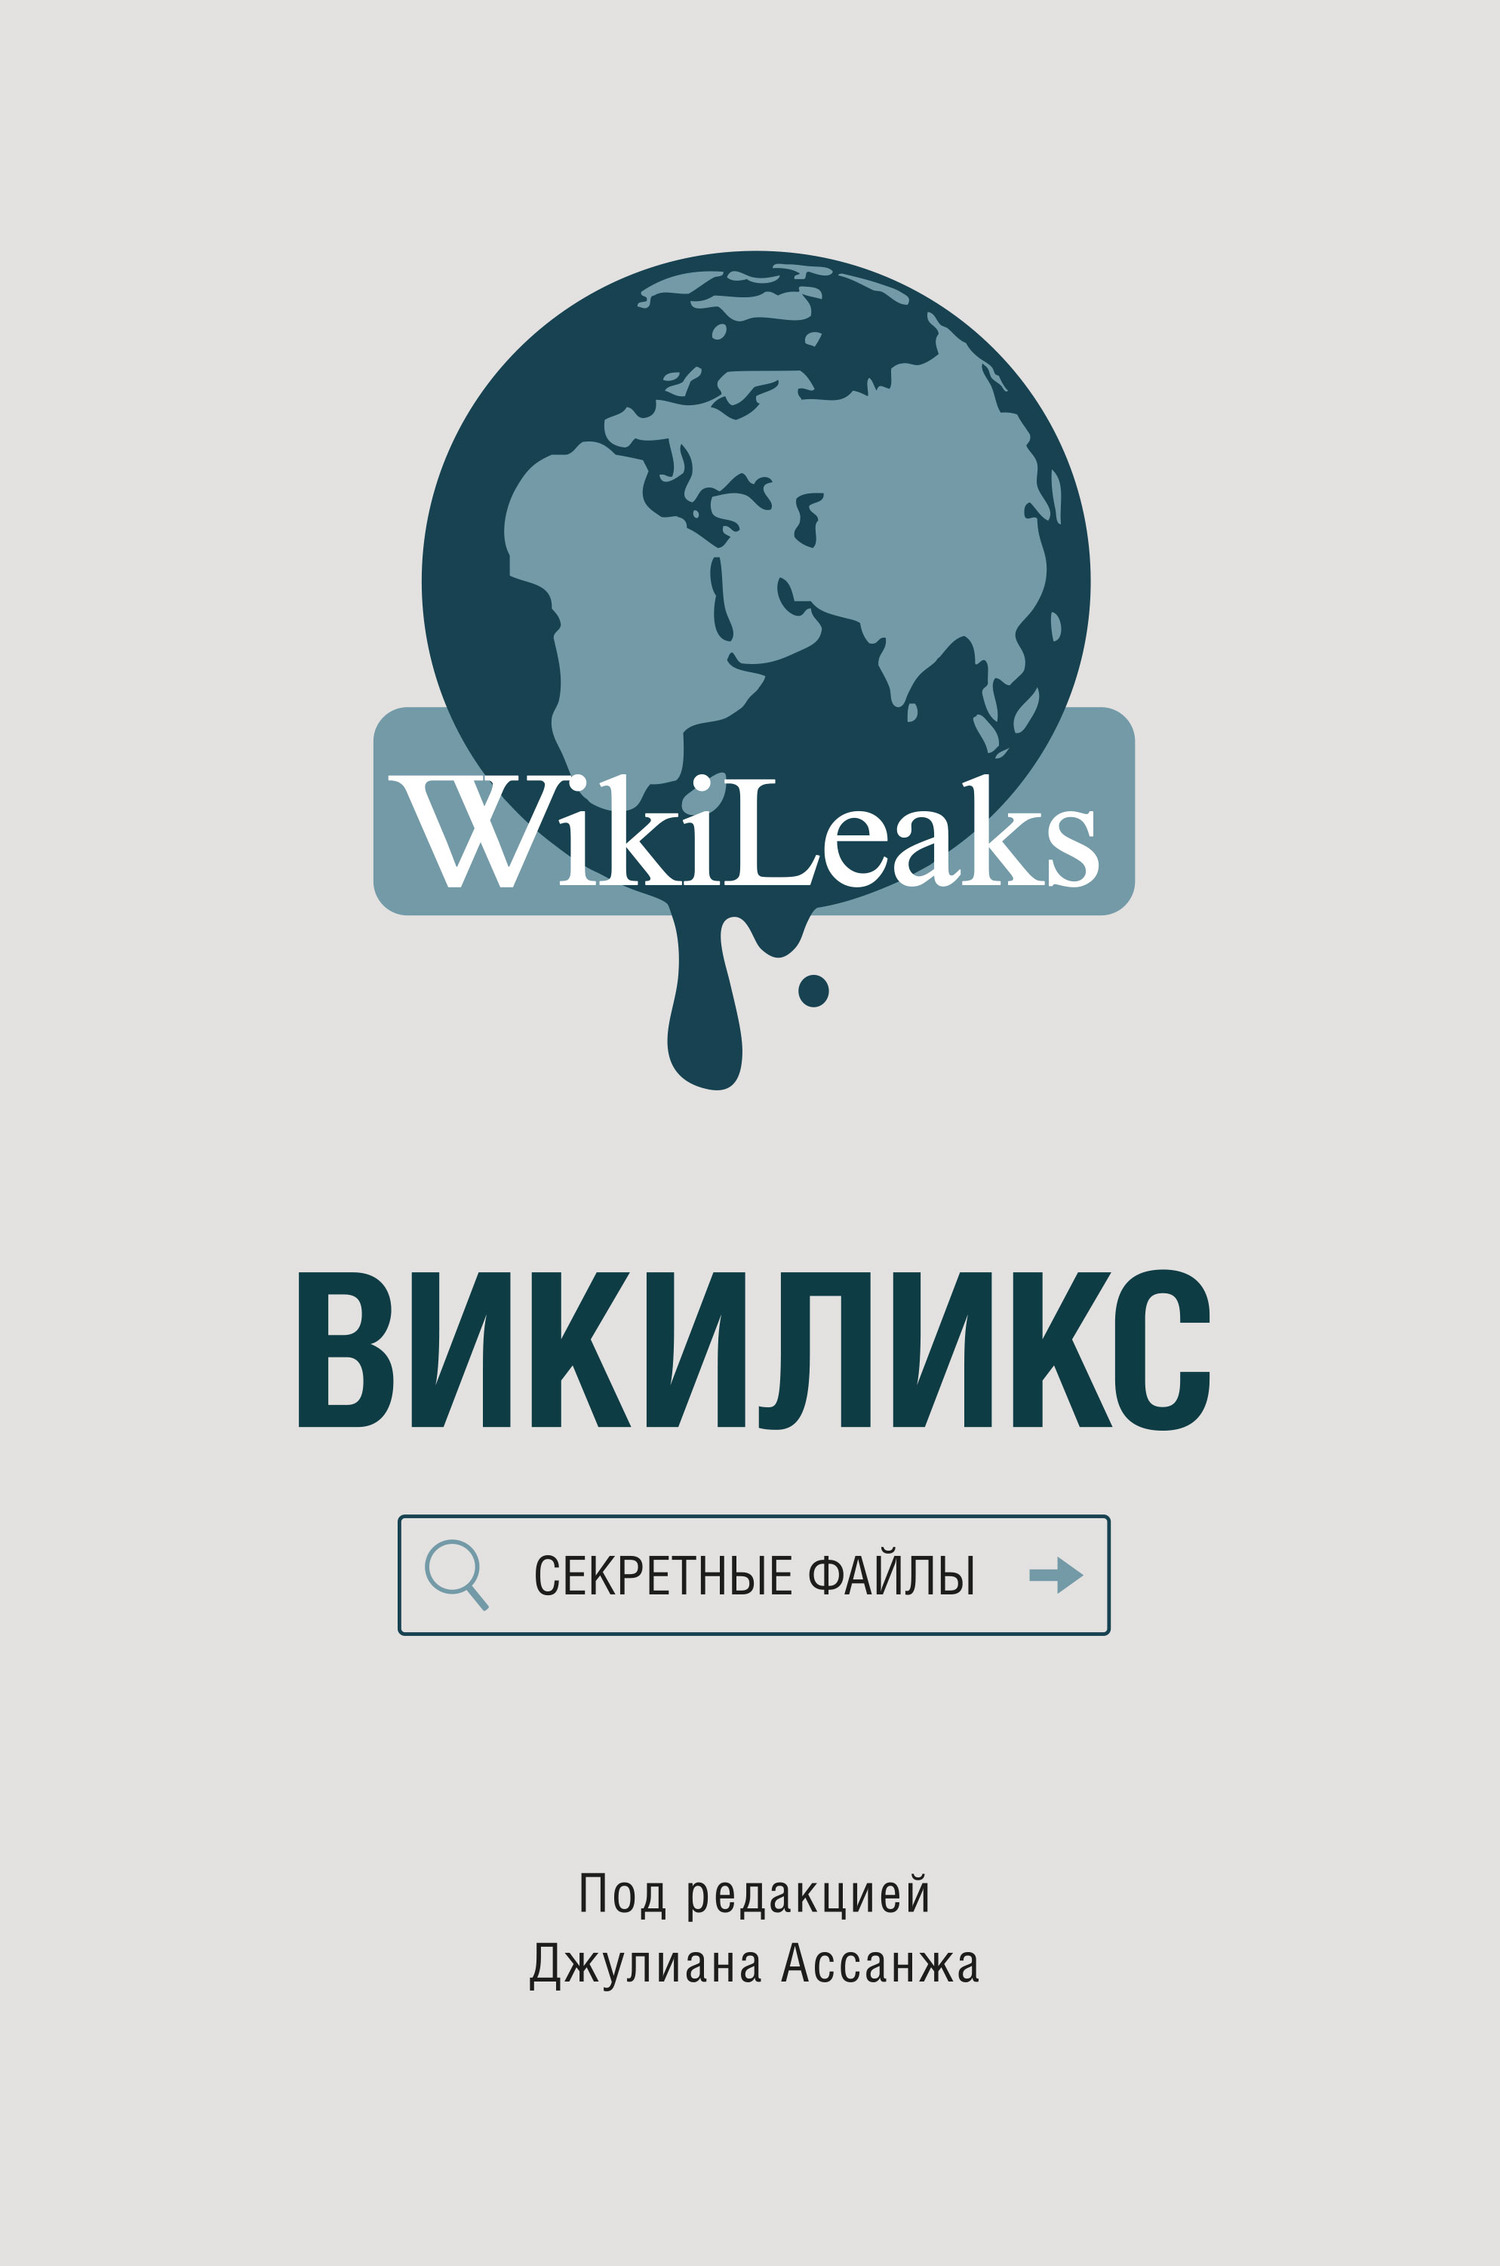 Ассанж Джулиан - Викиликс: Секретные файлы скачать бесплатно